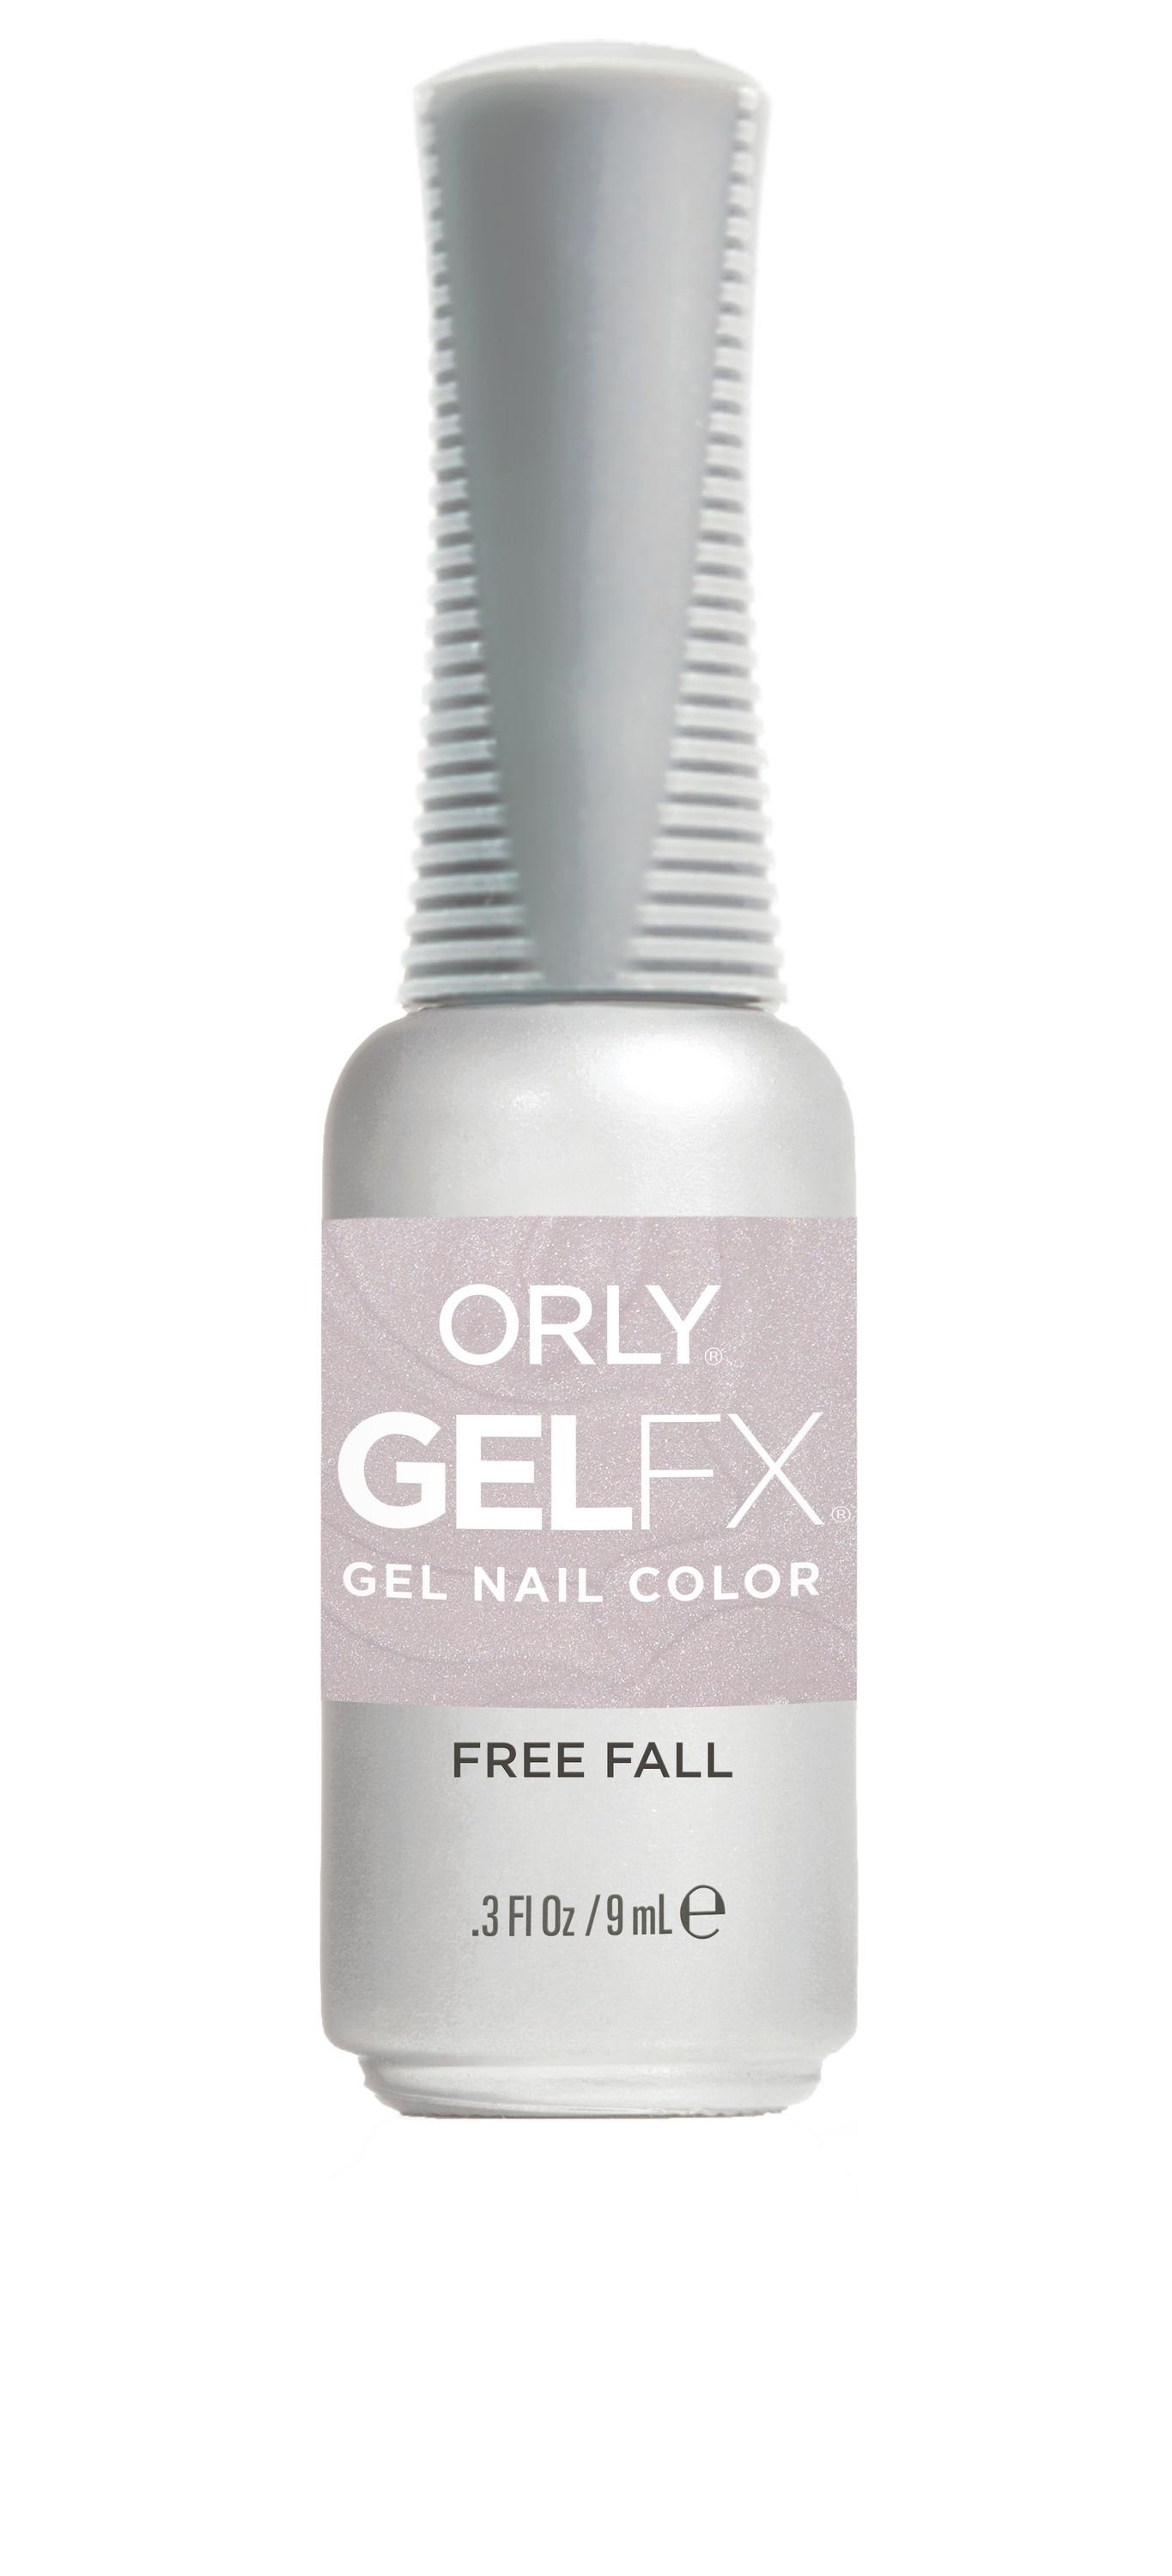 ORLY UV-Nagellack GEL FX Free Fall, 9ML | Nagellacke